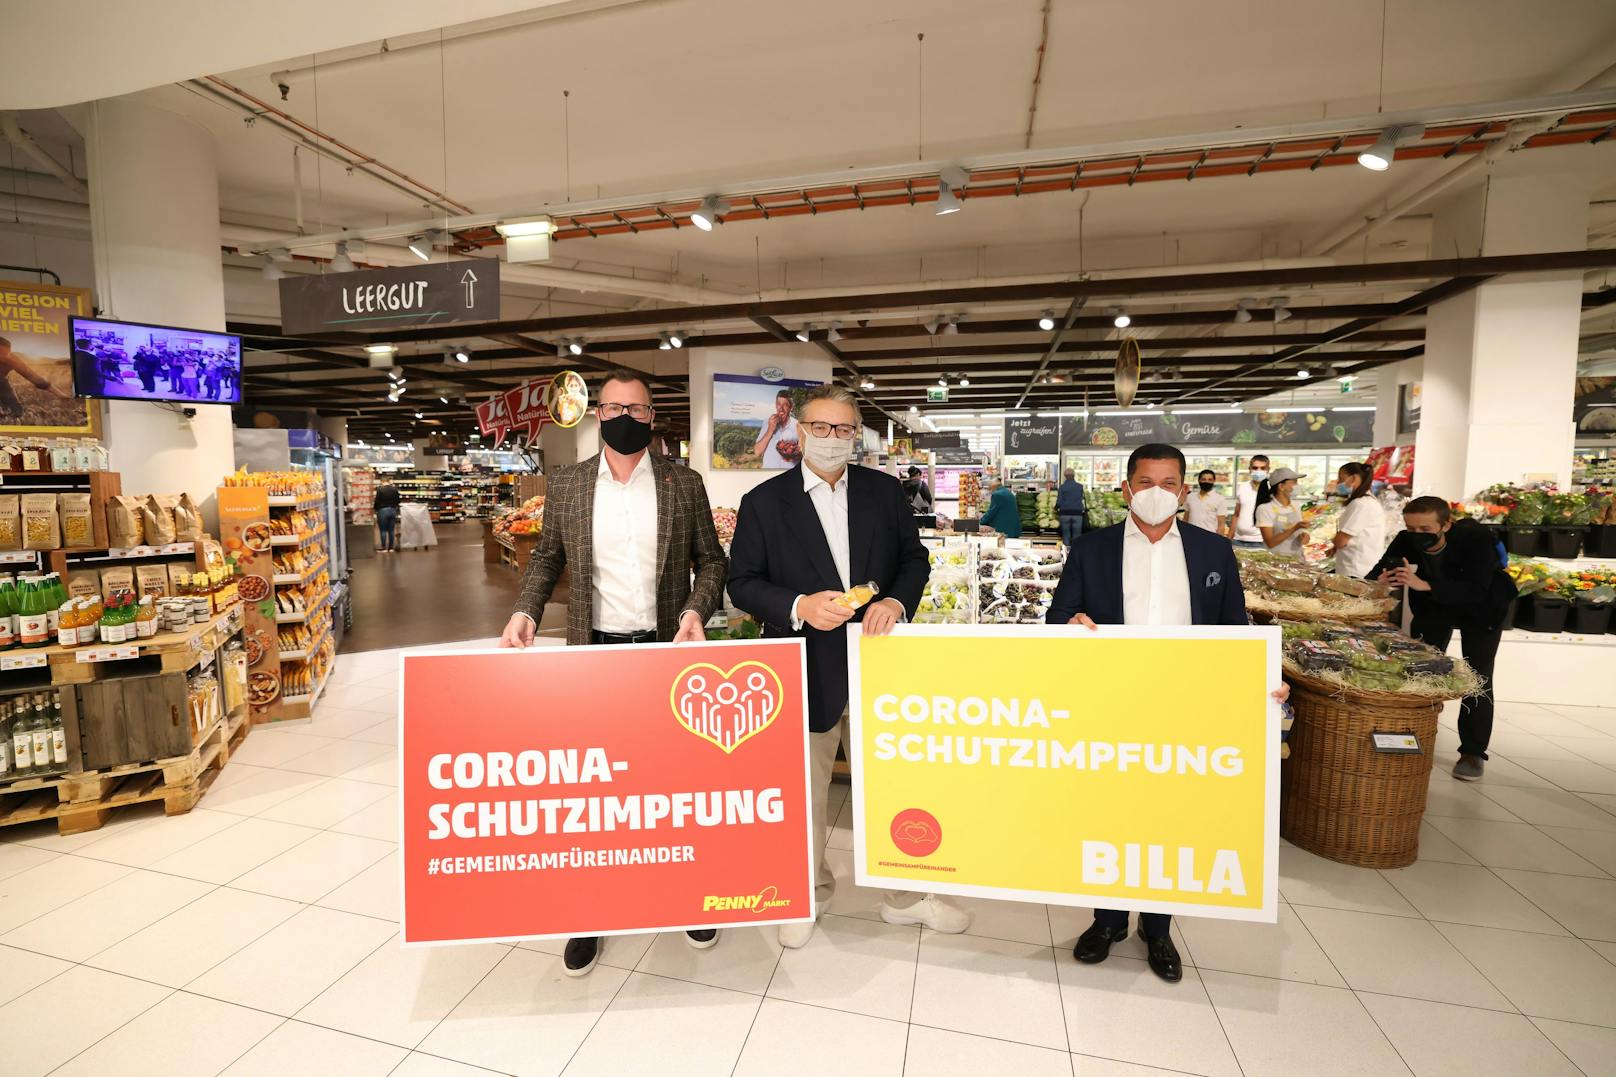 Der Start der Supermarkt-Impfaktion in Wien wurde von den Verantwortlichen groß inszeniert.